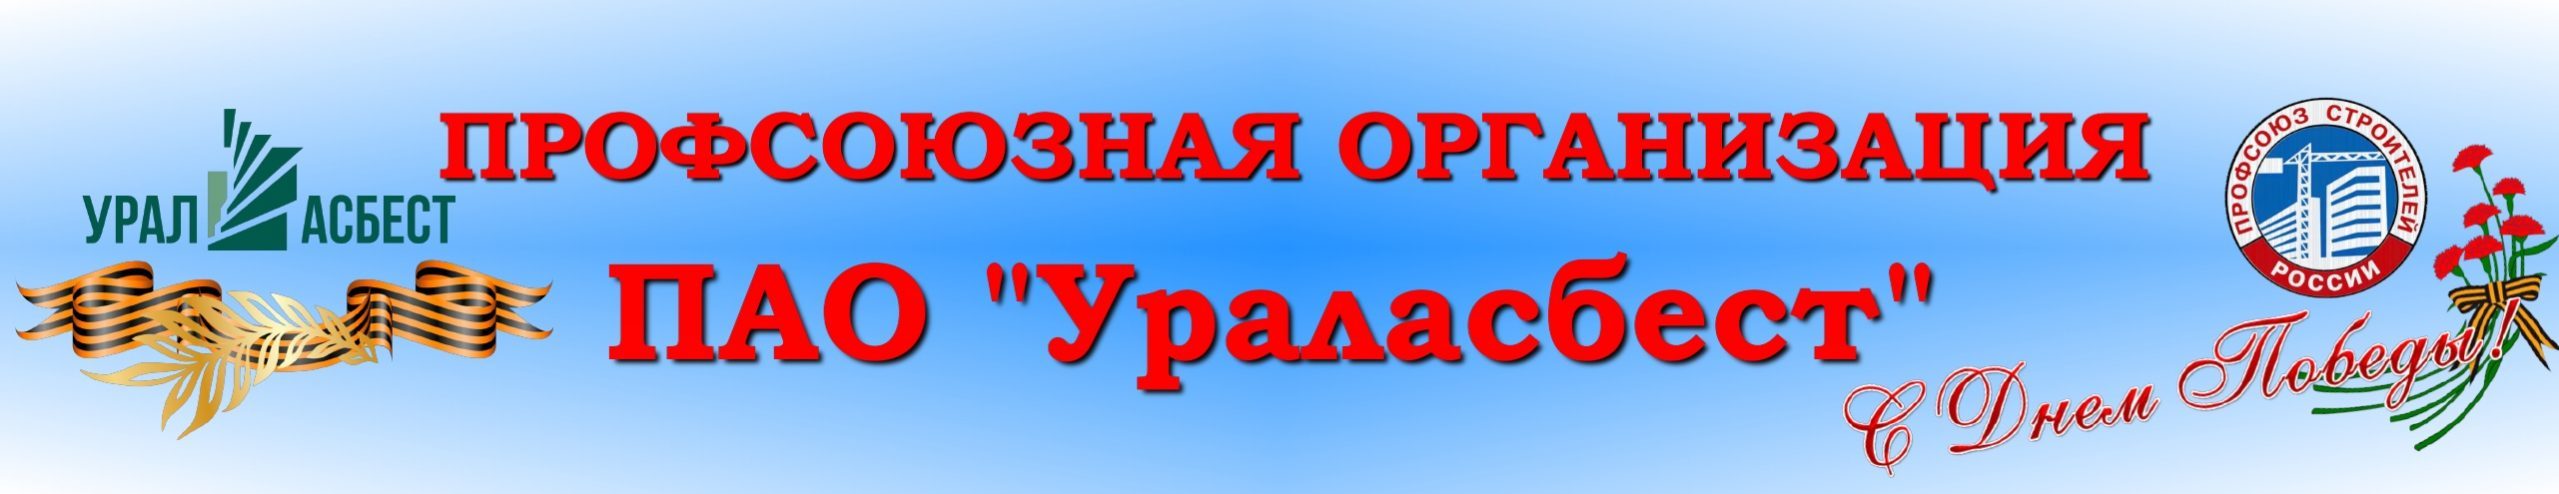 Профсоюзная организация ПАО "Ураласбест"